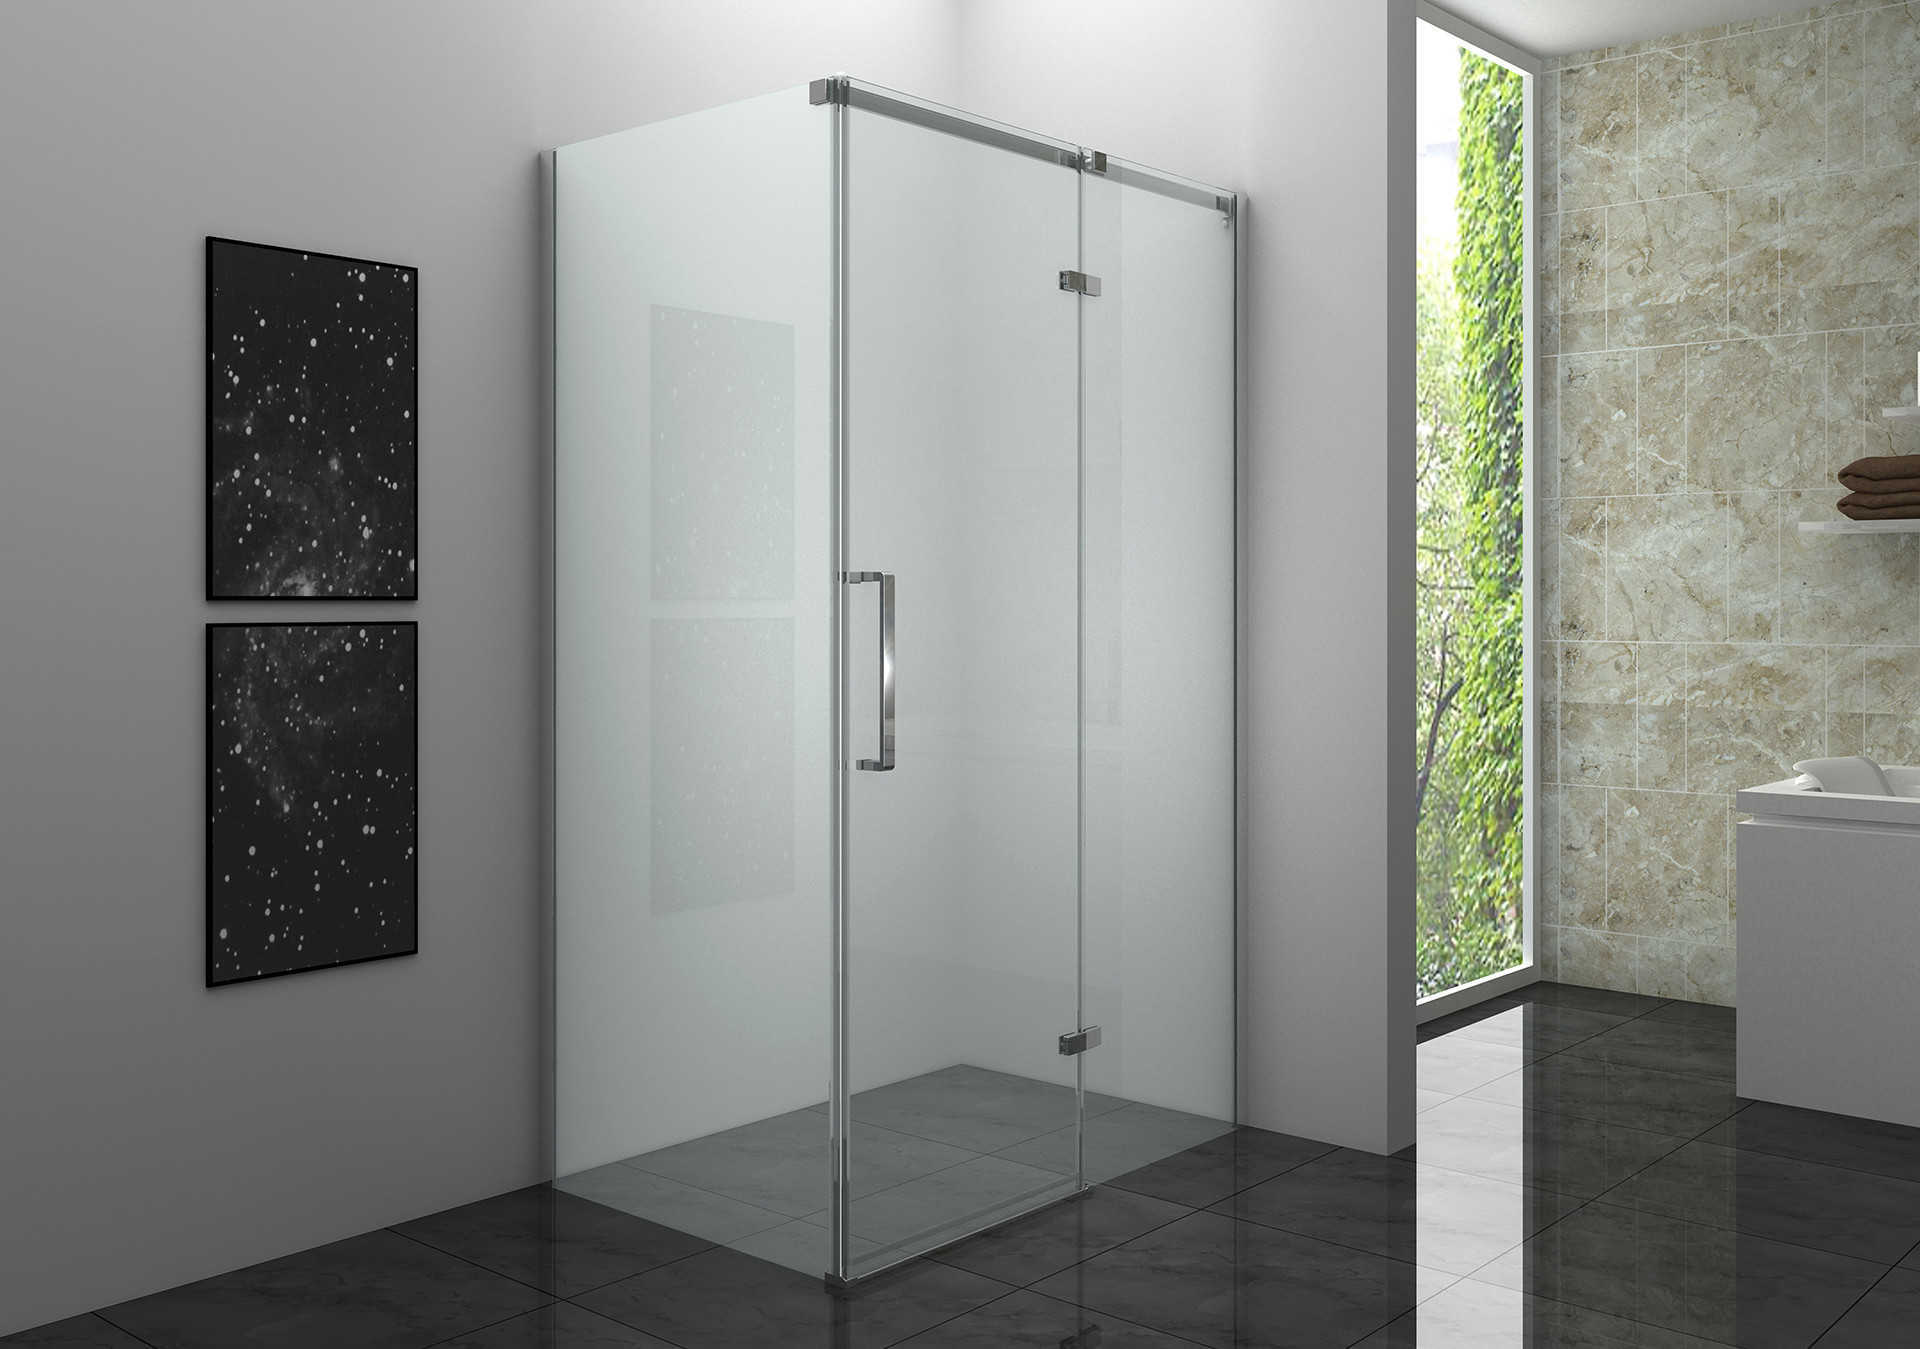 Una cabina de ducha cuadrante de doble puerta de esquina es un tipo de cabina de ducha diseñada para encajar en la esquina de un baño.